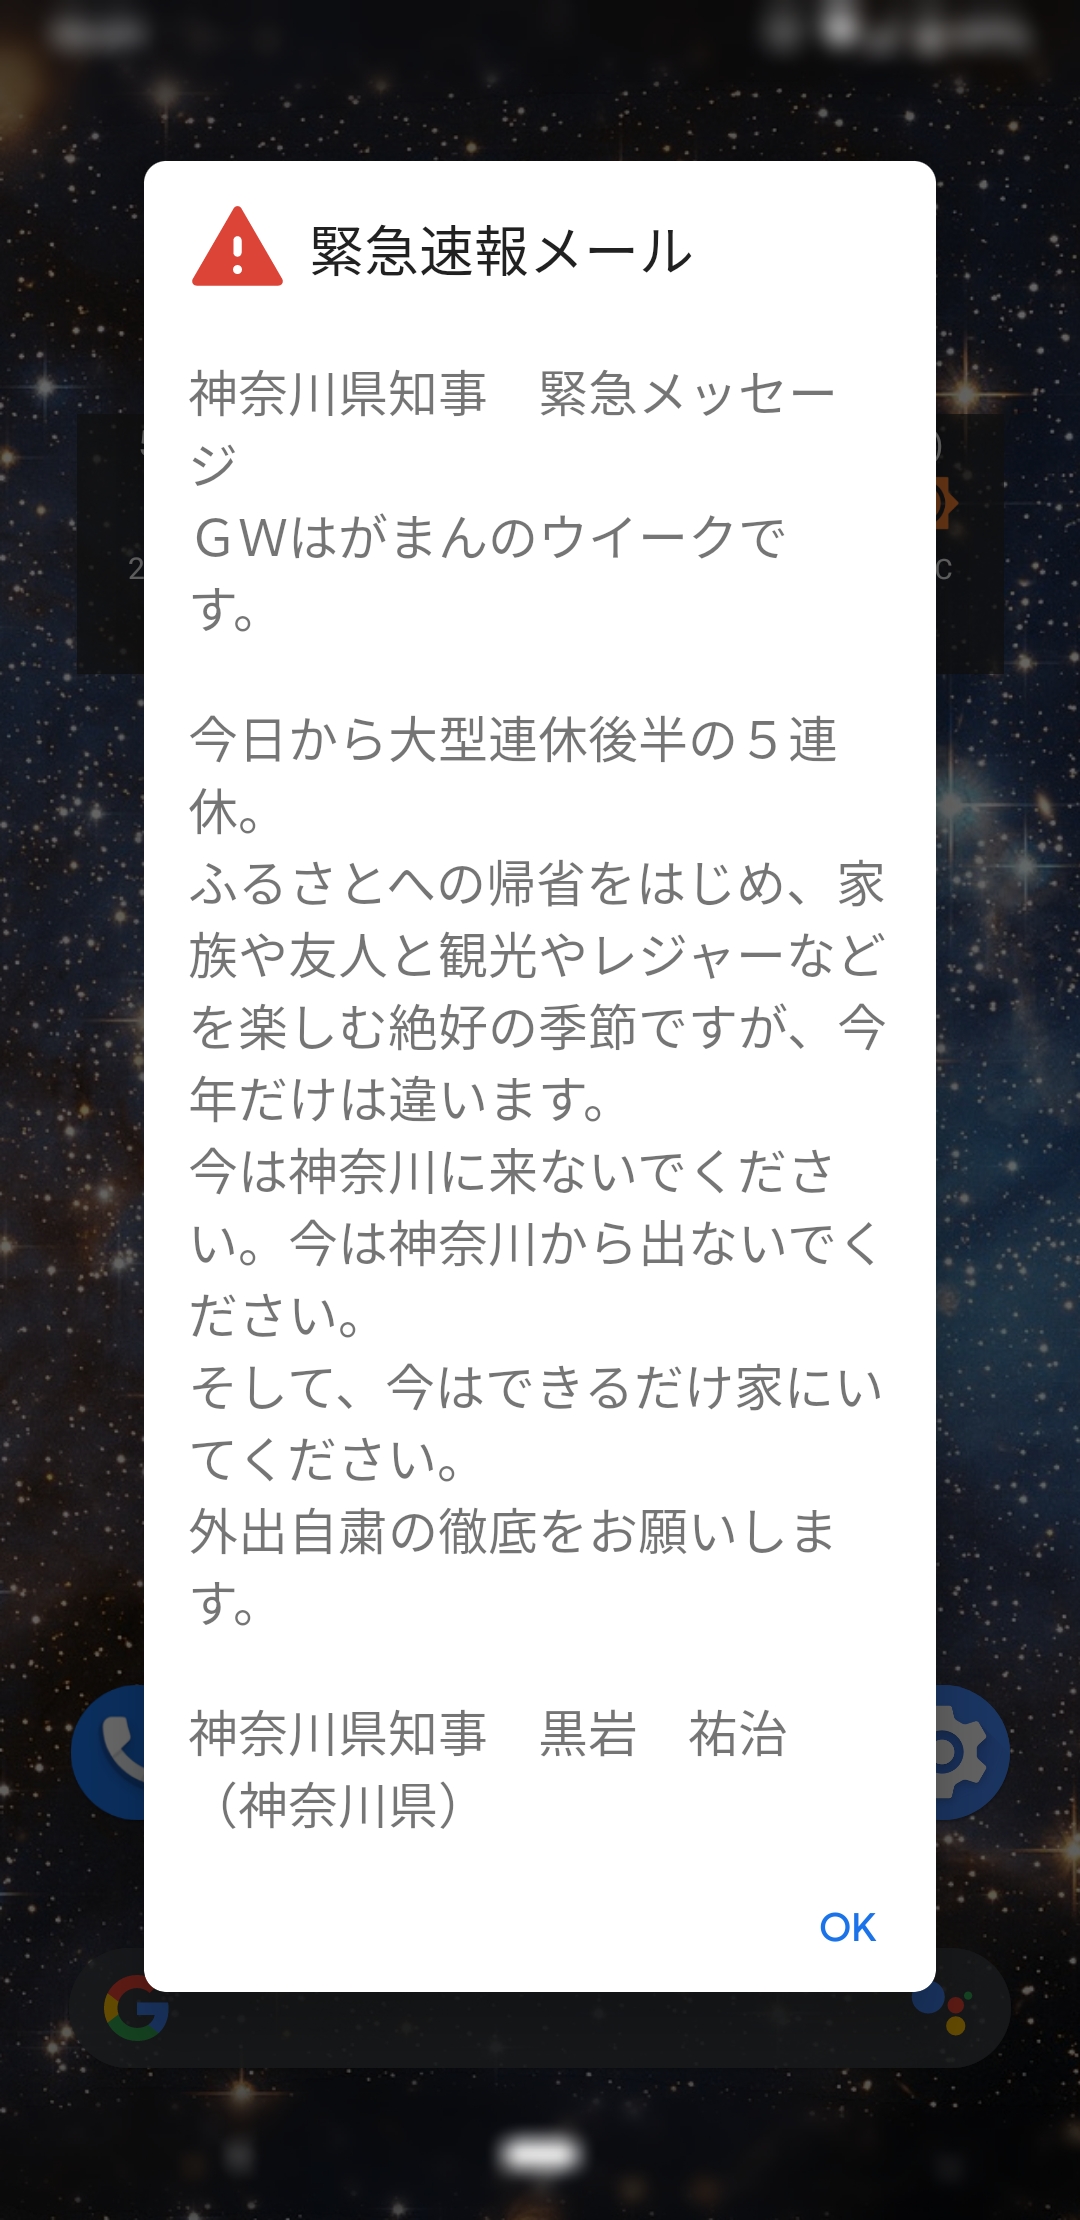 神奈川県知事からの緊急速報メール